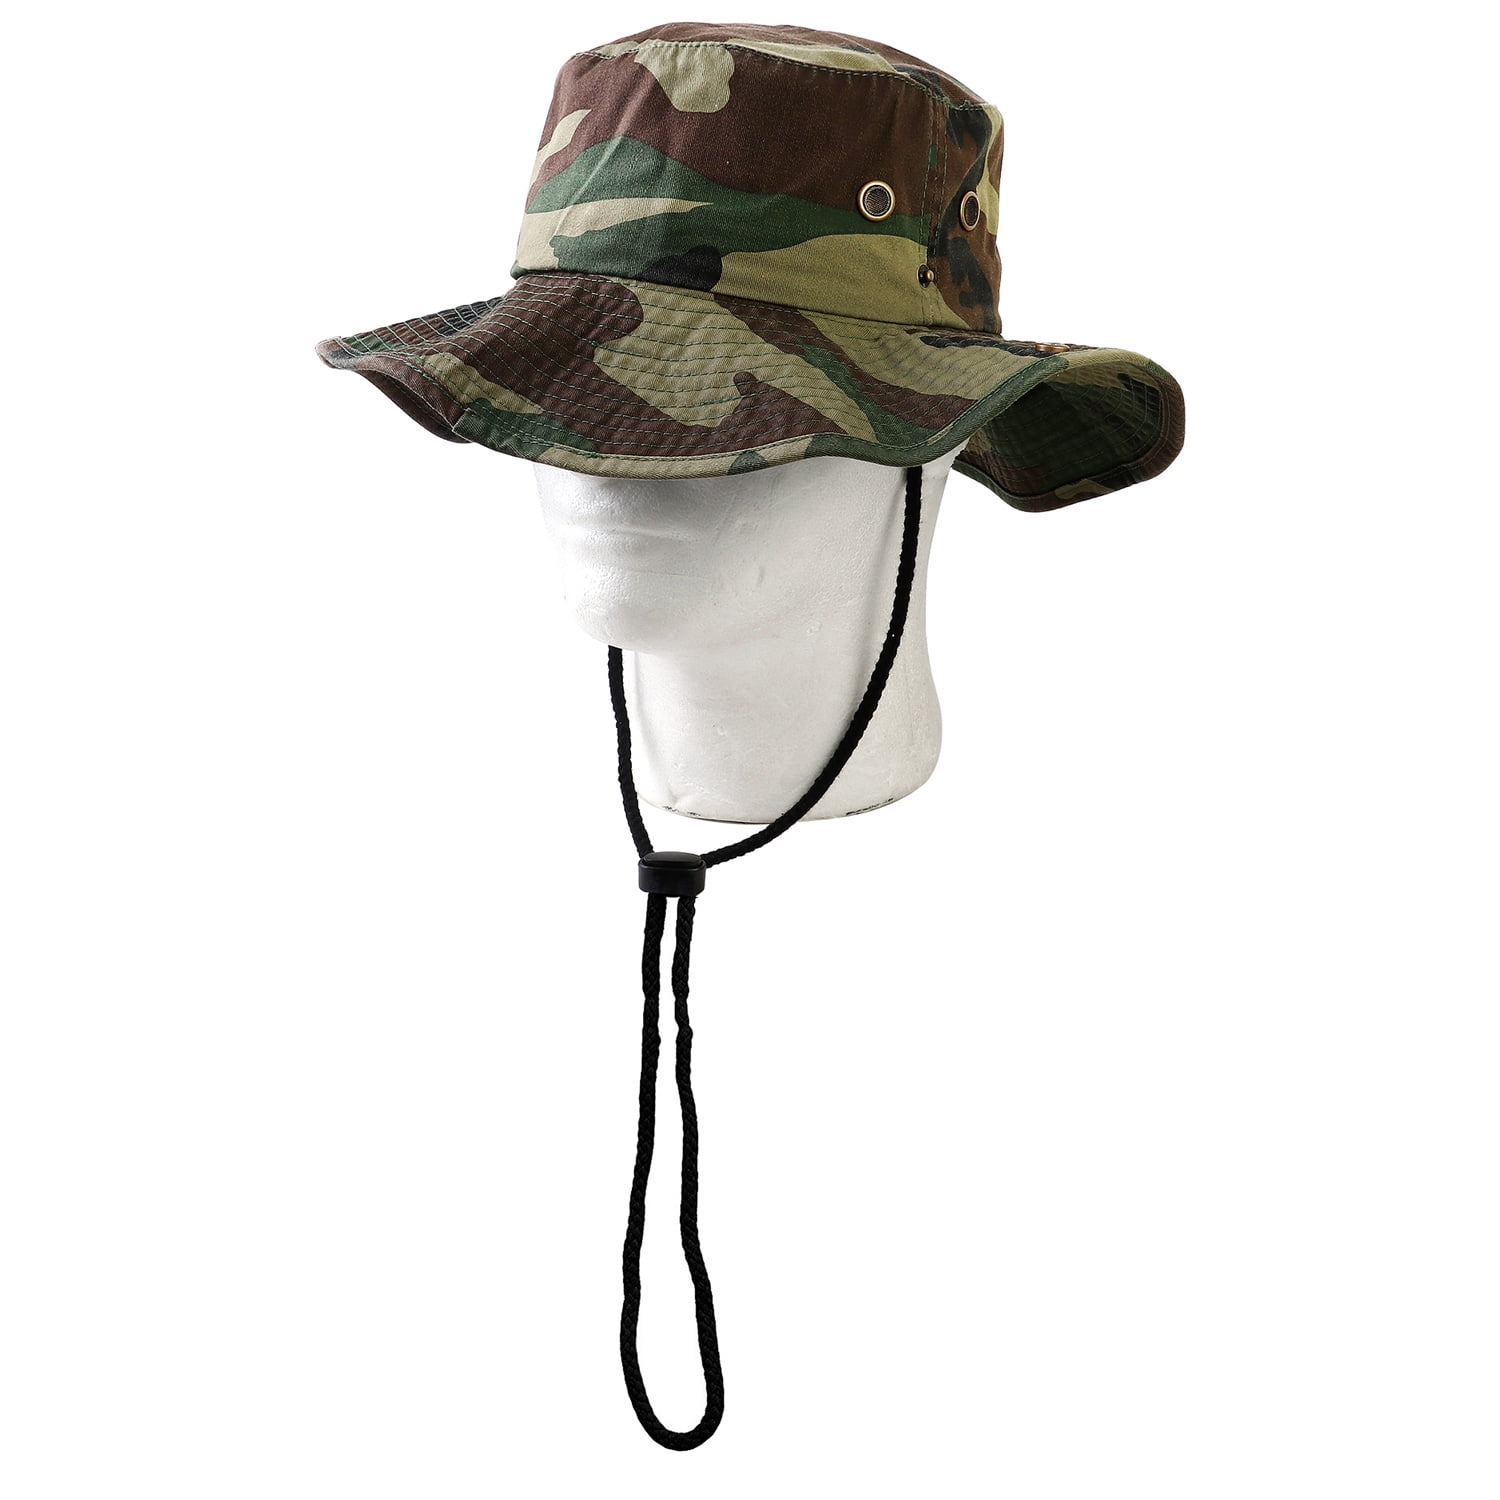 XIAOHAWANG Men Sun Hats UPF50+ Women Fishing Hat Hiking Safari Cap Outdoor  Boonie Caps Bucket Hat with Wide Brim